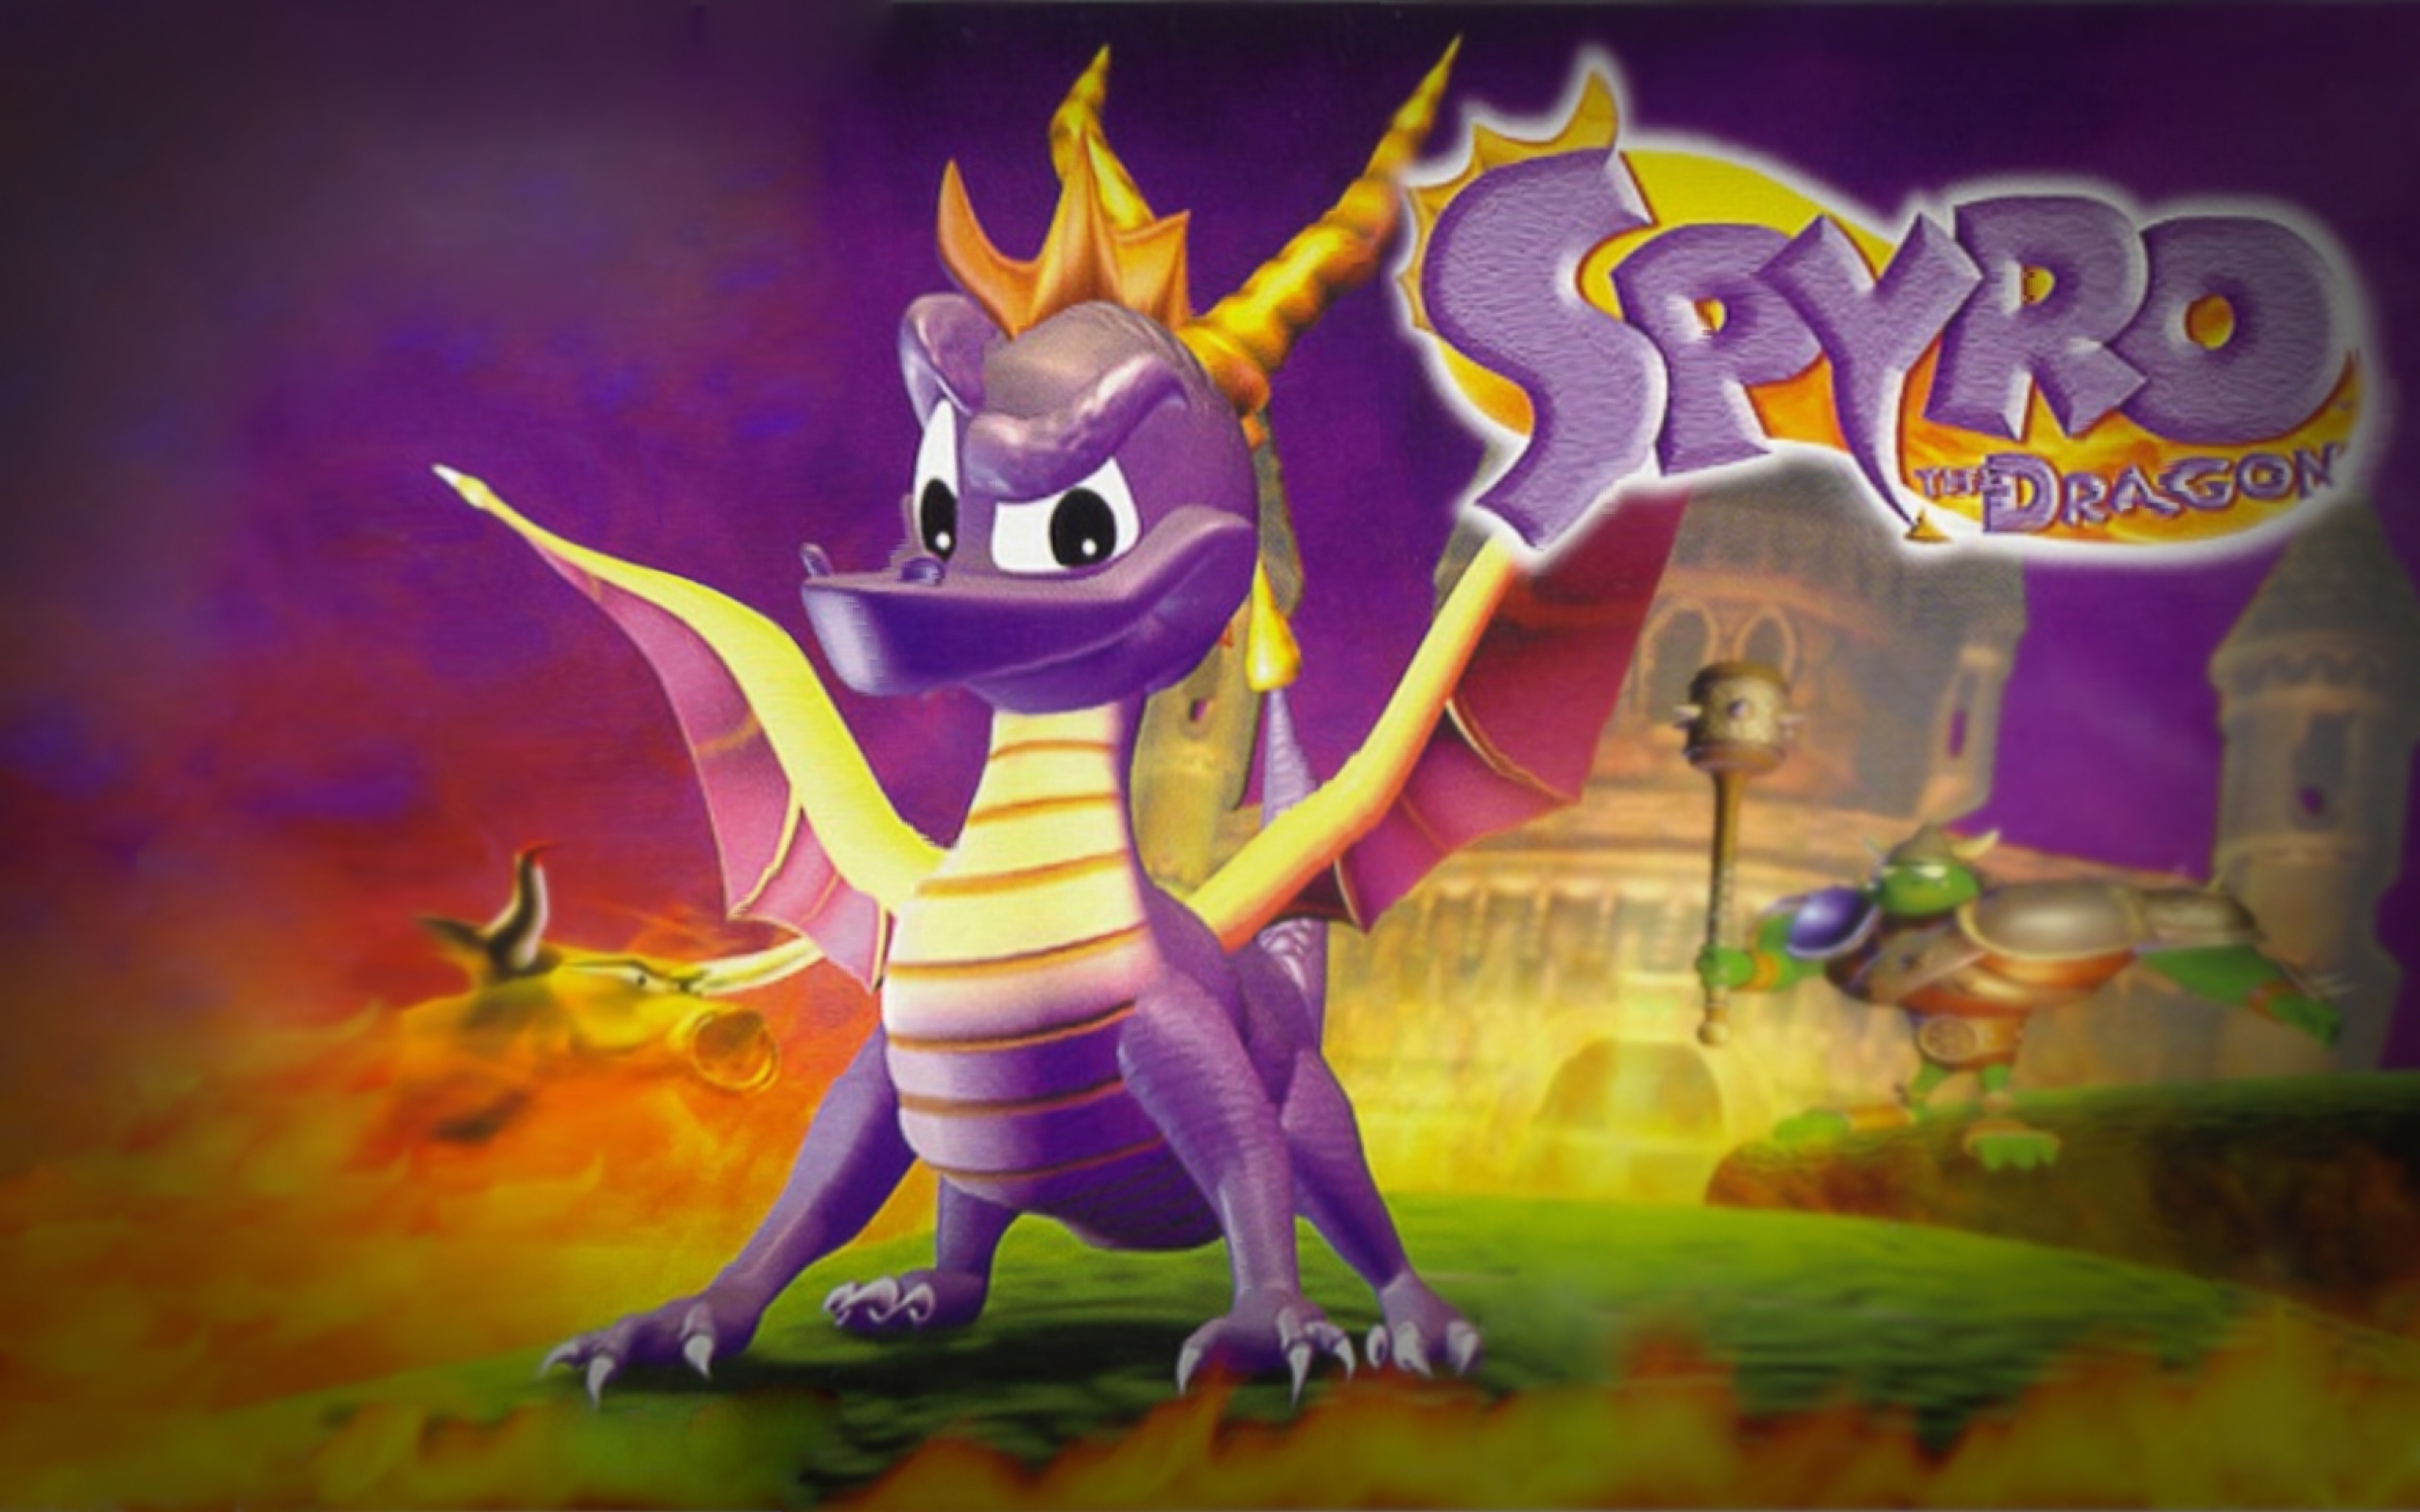 Wallpaper Spyro The Dragon